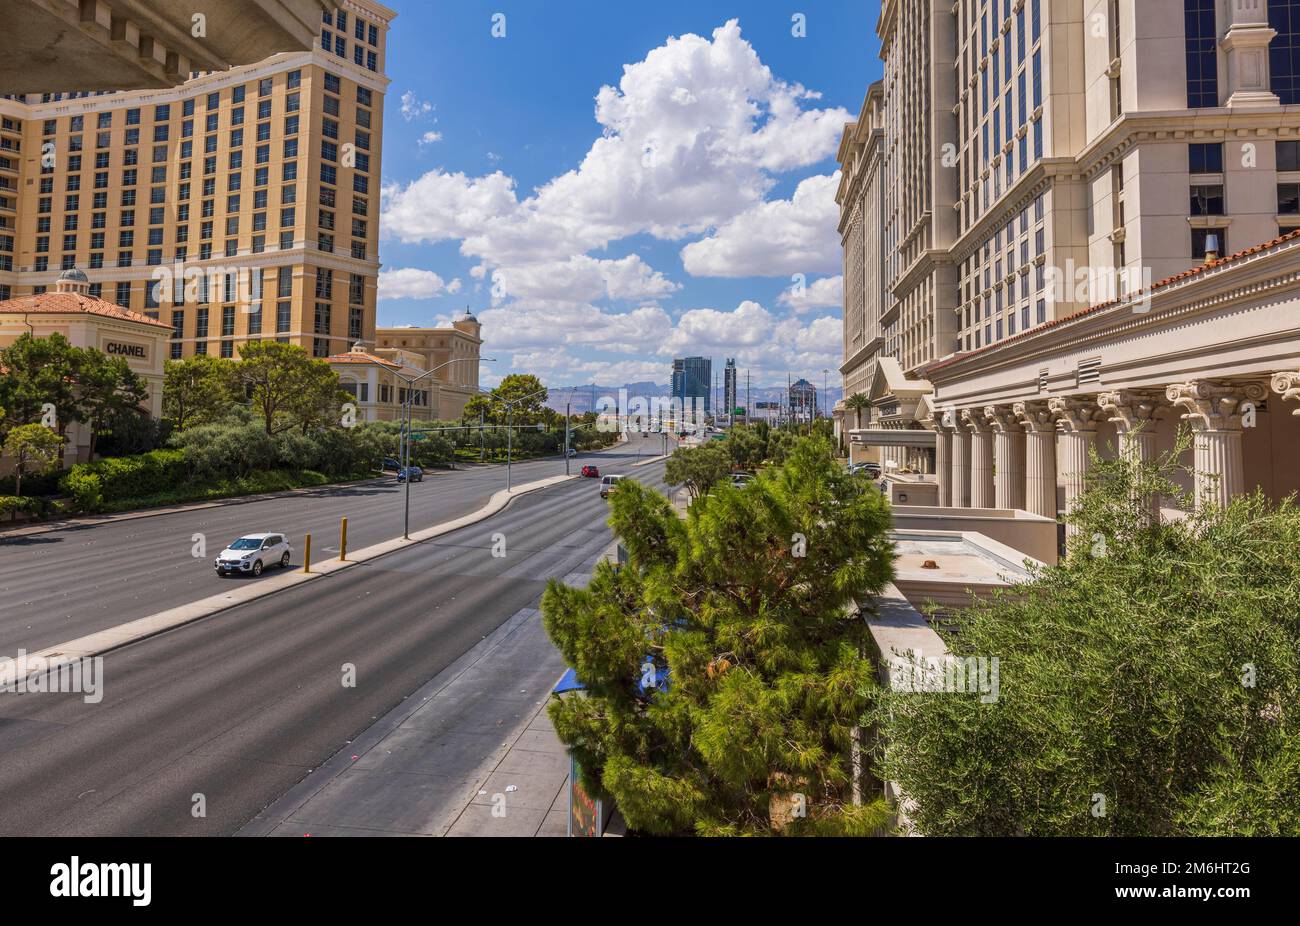 Wunderschöner Landschaftsblick auf die Strip Road zwischen zwei großen Hotels am blauen Himmel mit pudelweißen Wolken im Hintergrund. Las Vegas, Nevada, USA. Stockfoto